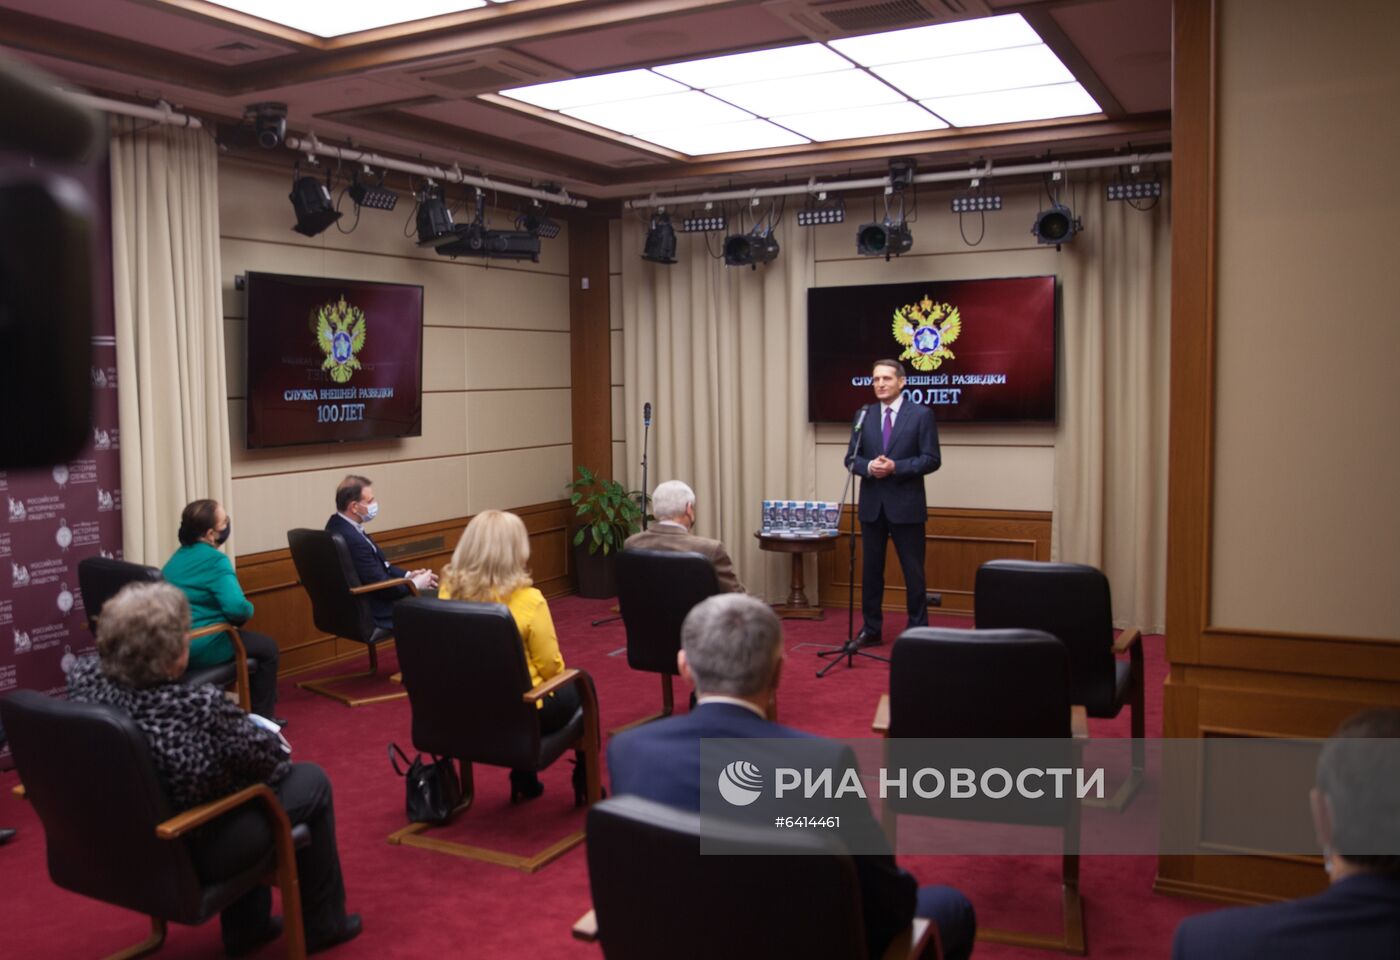 Мероприятия с участием С. Нарышкина, приуроченные к 100-летию отечественной внешней разведки